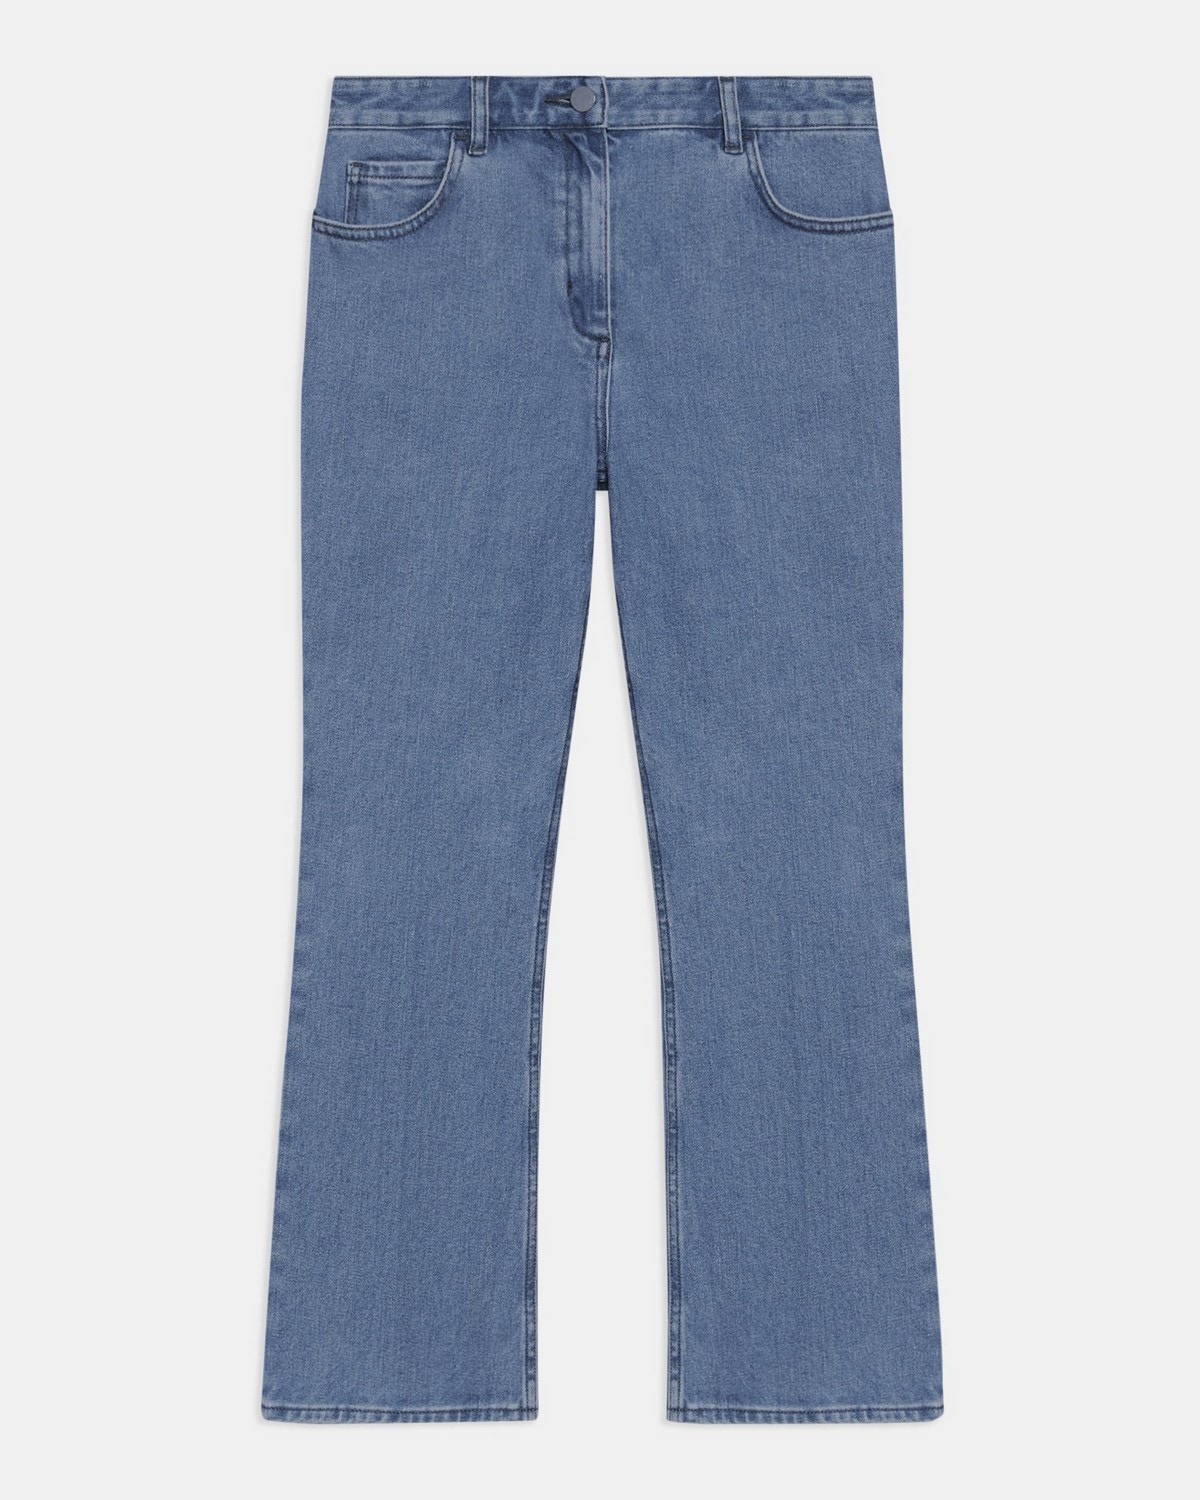 5-Pocket Flare Jean in Washed Denim